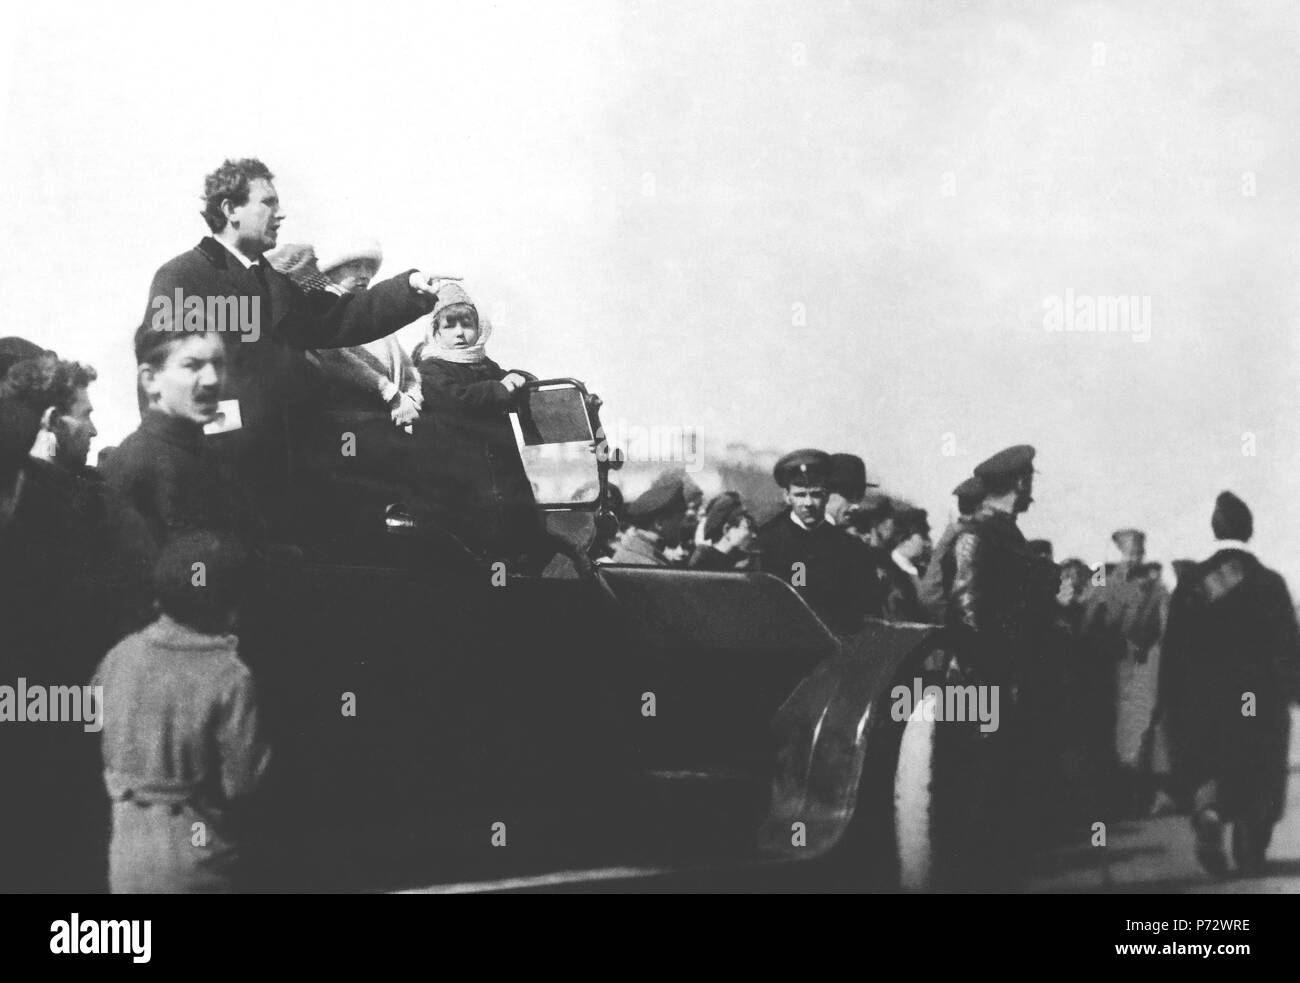 Anglais : Grigori Zinoviev, Président du Soviet de Pétrograd s'adresse à la foule sur la première Internationale des travailleurs après l'Insurrection d'octobre (la Révolution bolchevique). Date : 1 mai 1918. Lieu : Champs de Mars, Petrograd. Contexte : Zinoviev était un des sept dirigeants de la première du Politburo, fondée en 1917 afin de gérer l'insurrection en 1917 : Lénine, Trotsky, Zinoviev, Kamenev, Staline, Sokolnikov et Boubnov. Il est devenu le président du Comité exécutif de l'Internationale communiste lorsqu'il a été créé en mars 1919 pour propager l'insurrection dans le monde entier. Grigori Zinoviev fut exécuté en 1936, foll Banque D'Images